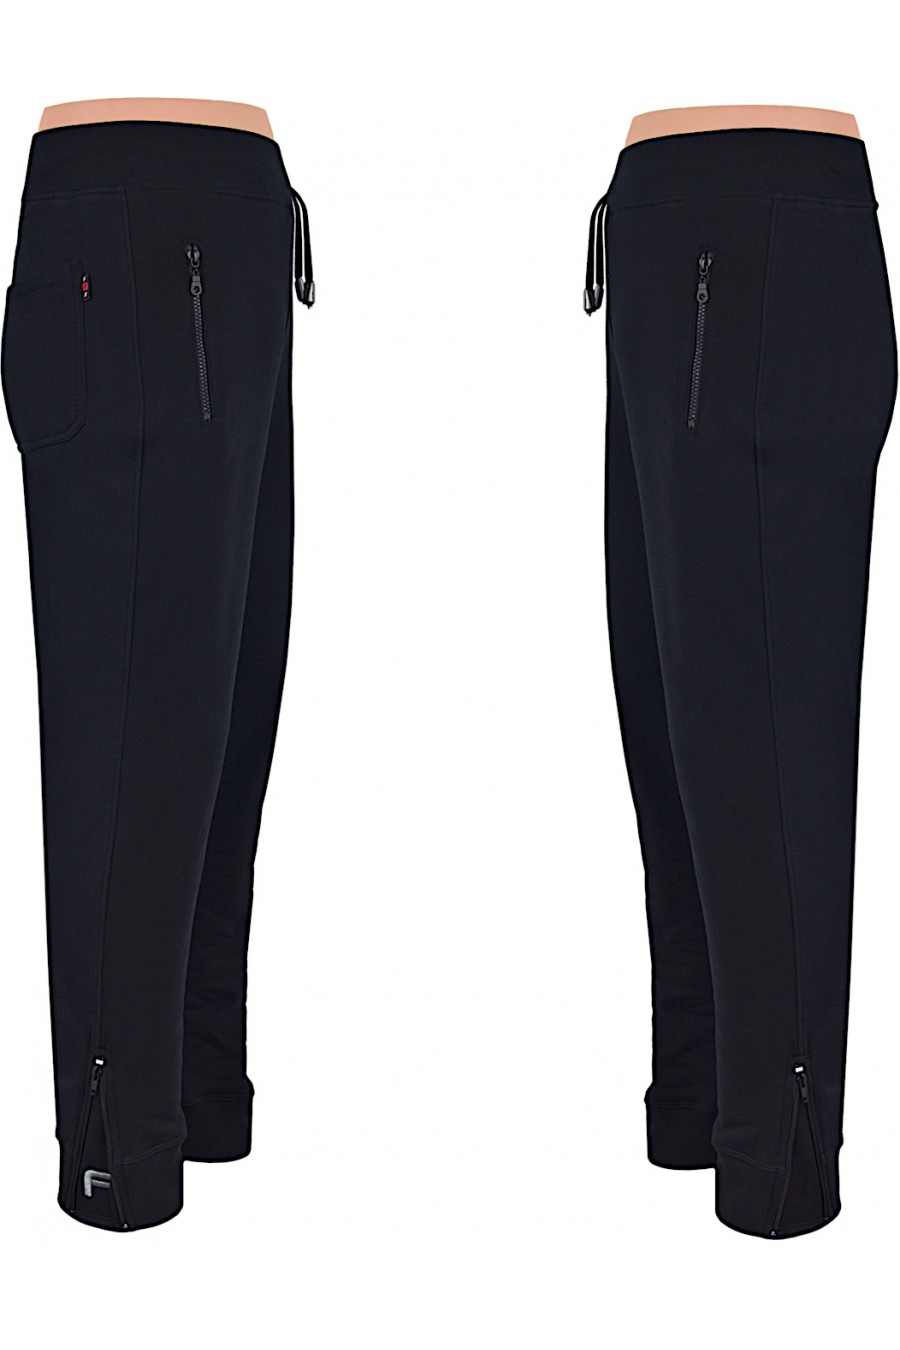 Ciepłe spodnie sportowe ZIP czarne M-6XL